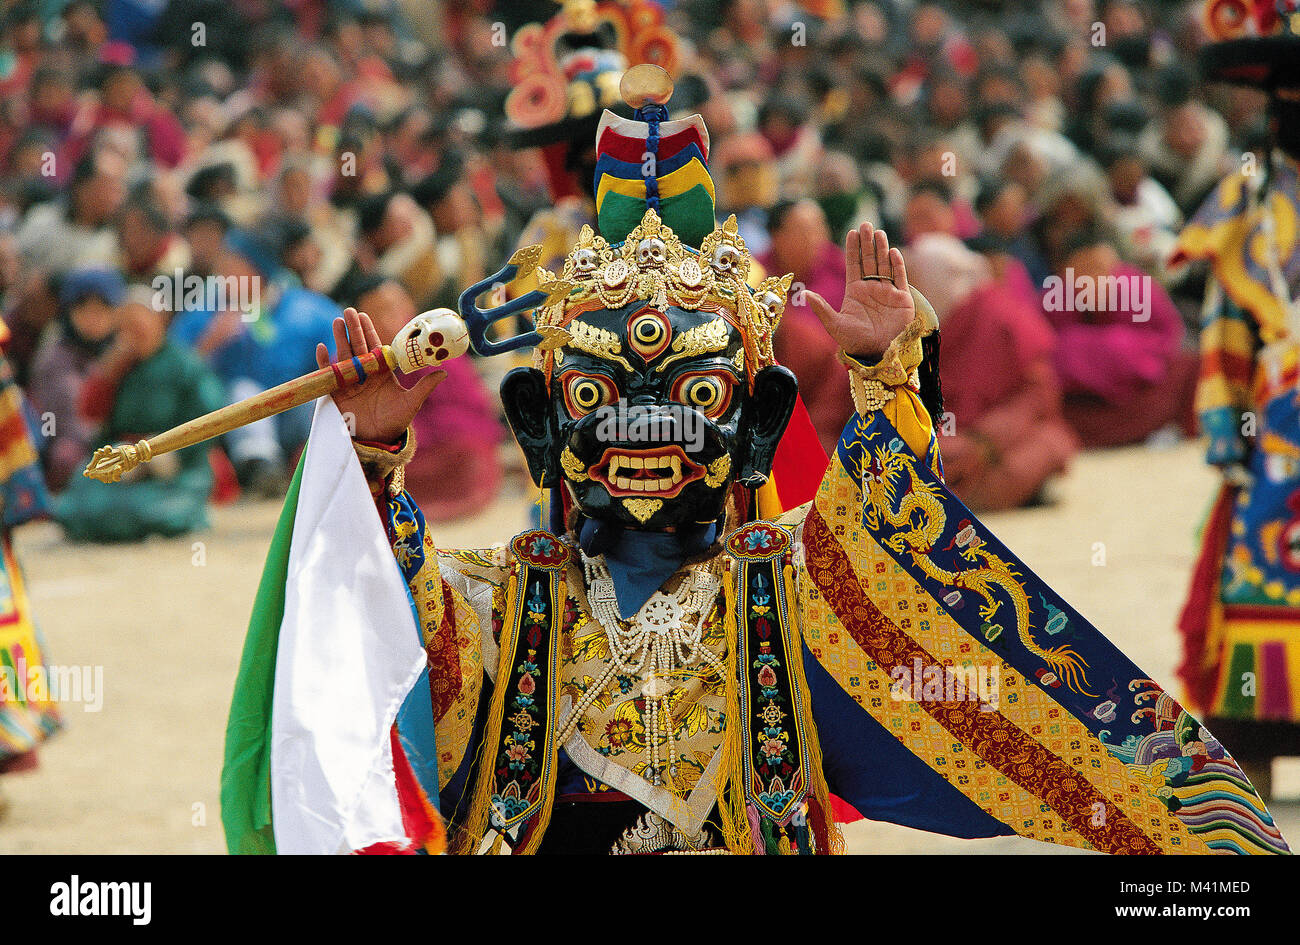 China, Ost Tibet, Provinz Amdo Labrang Tashikyil Kloster hatte sechs Hochschulen für die philosophischen, Tantrische und medizinische Studien, während der Kulturrevolution geschlossen, wieder geöffnet und begrüßt 1980 Tausende von Pilgern während des Losar Festival, Tänzer tragen des Yama Gott Kostüm Stockfoto